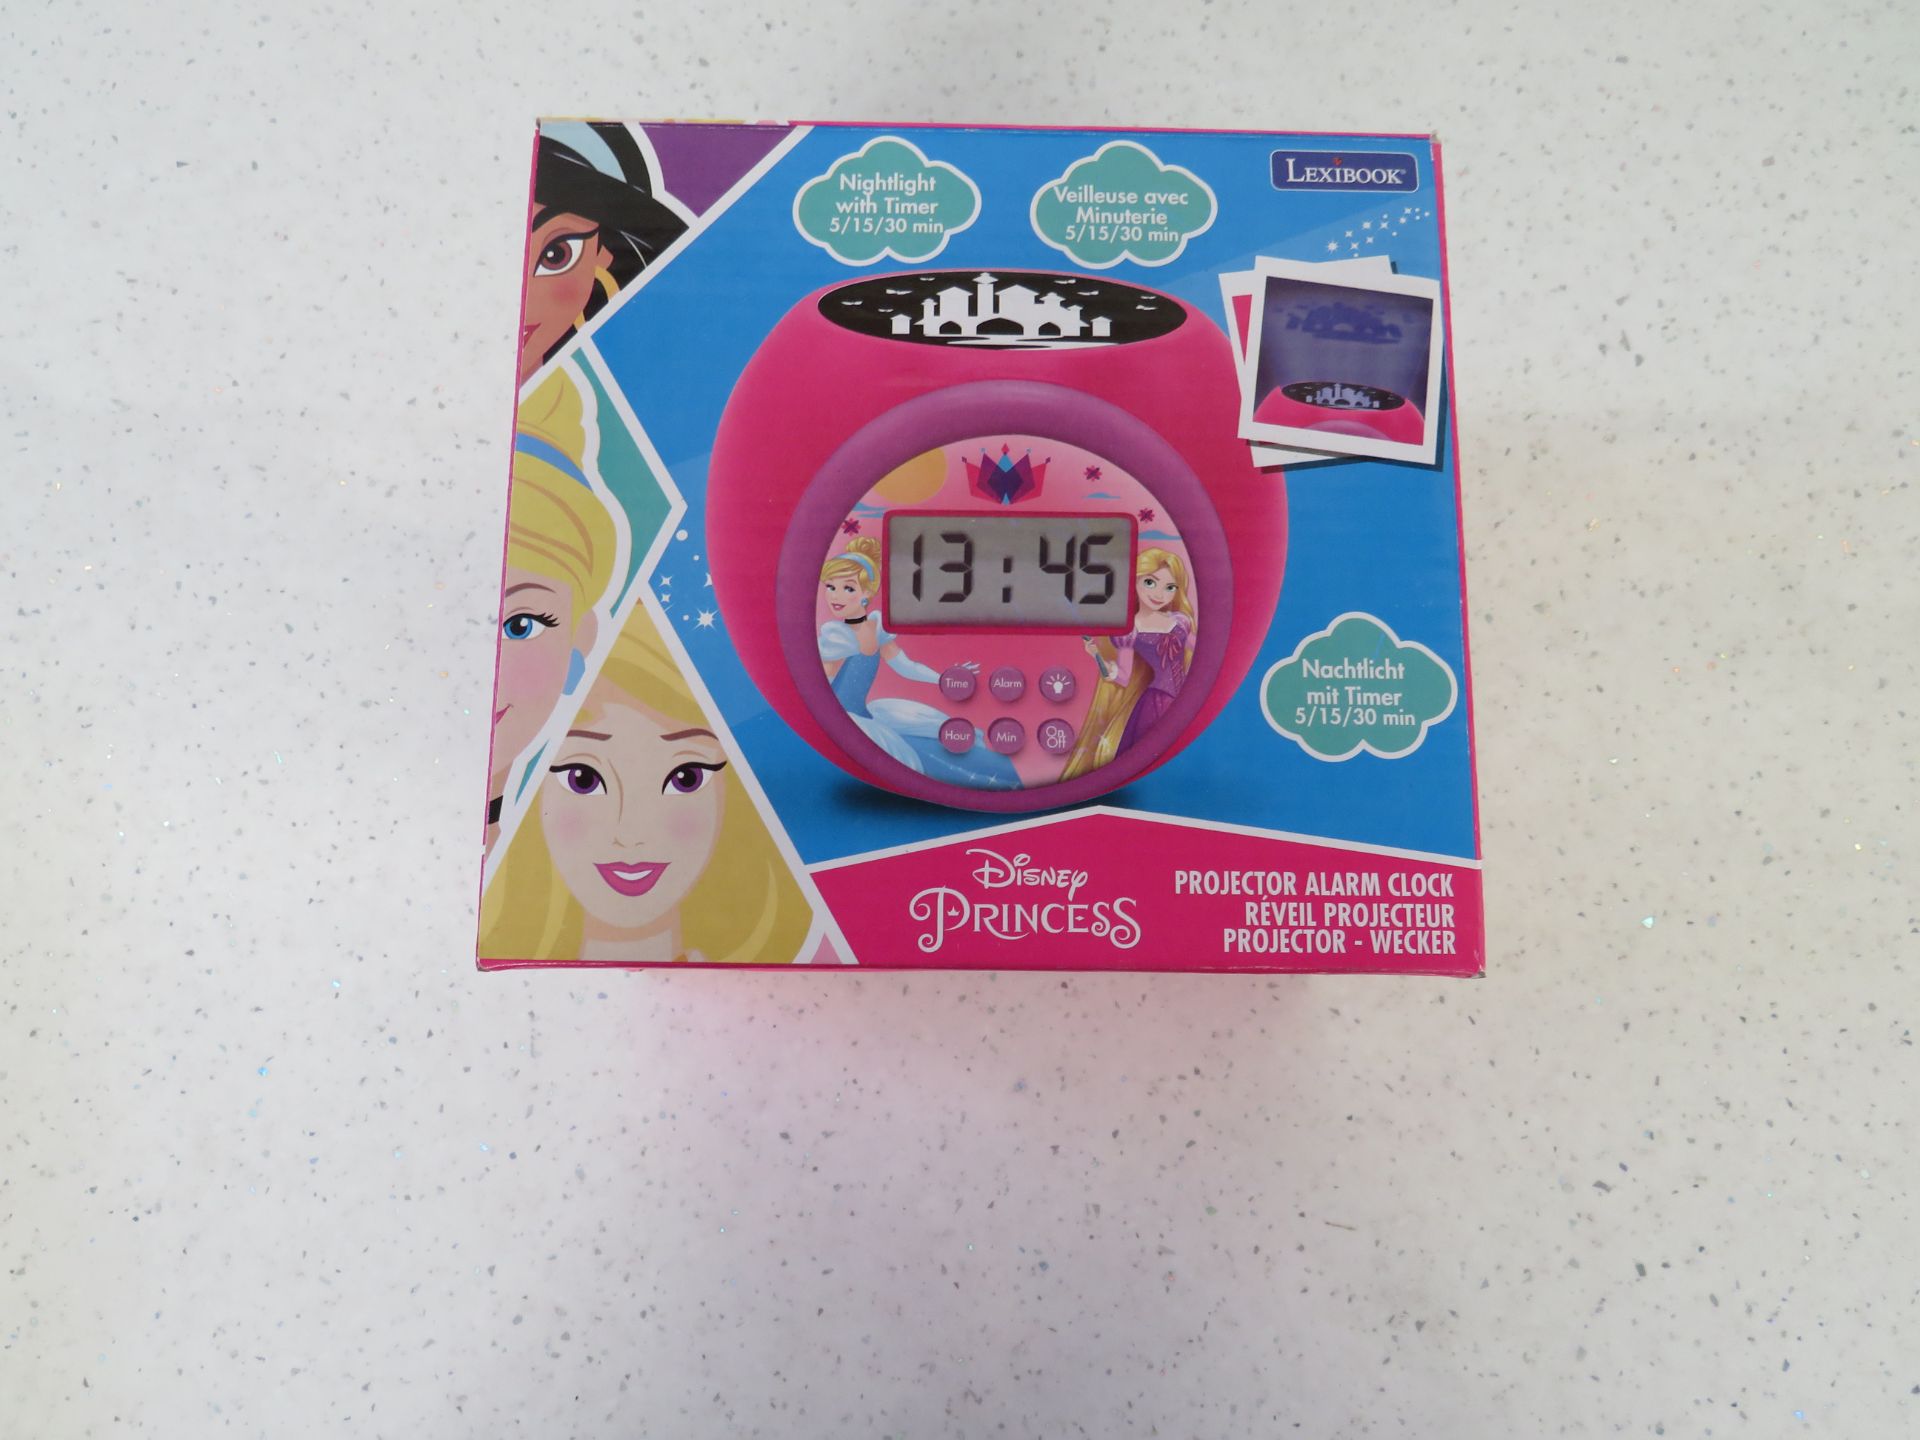 Lexibook - Disney Princess Projector Alarm Clock - Unchecked & Boxed.